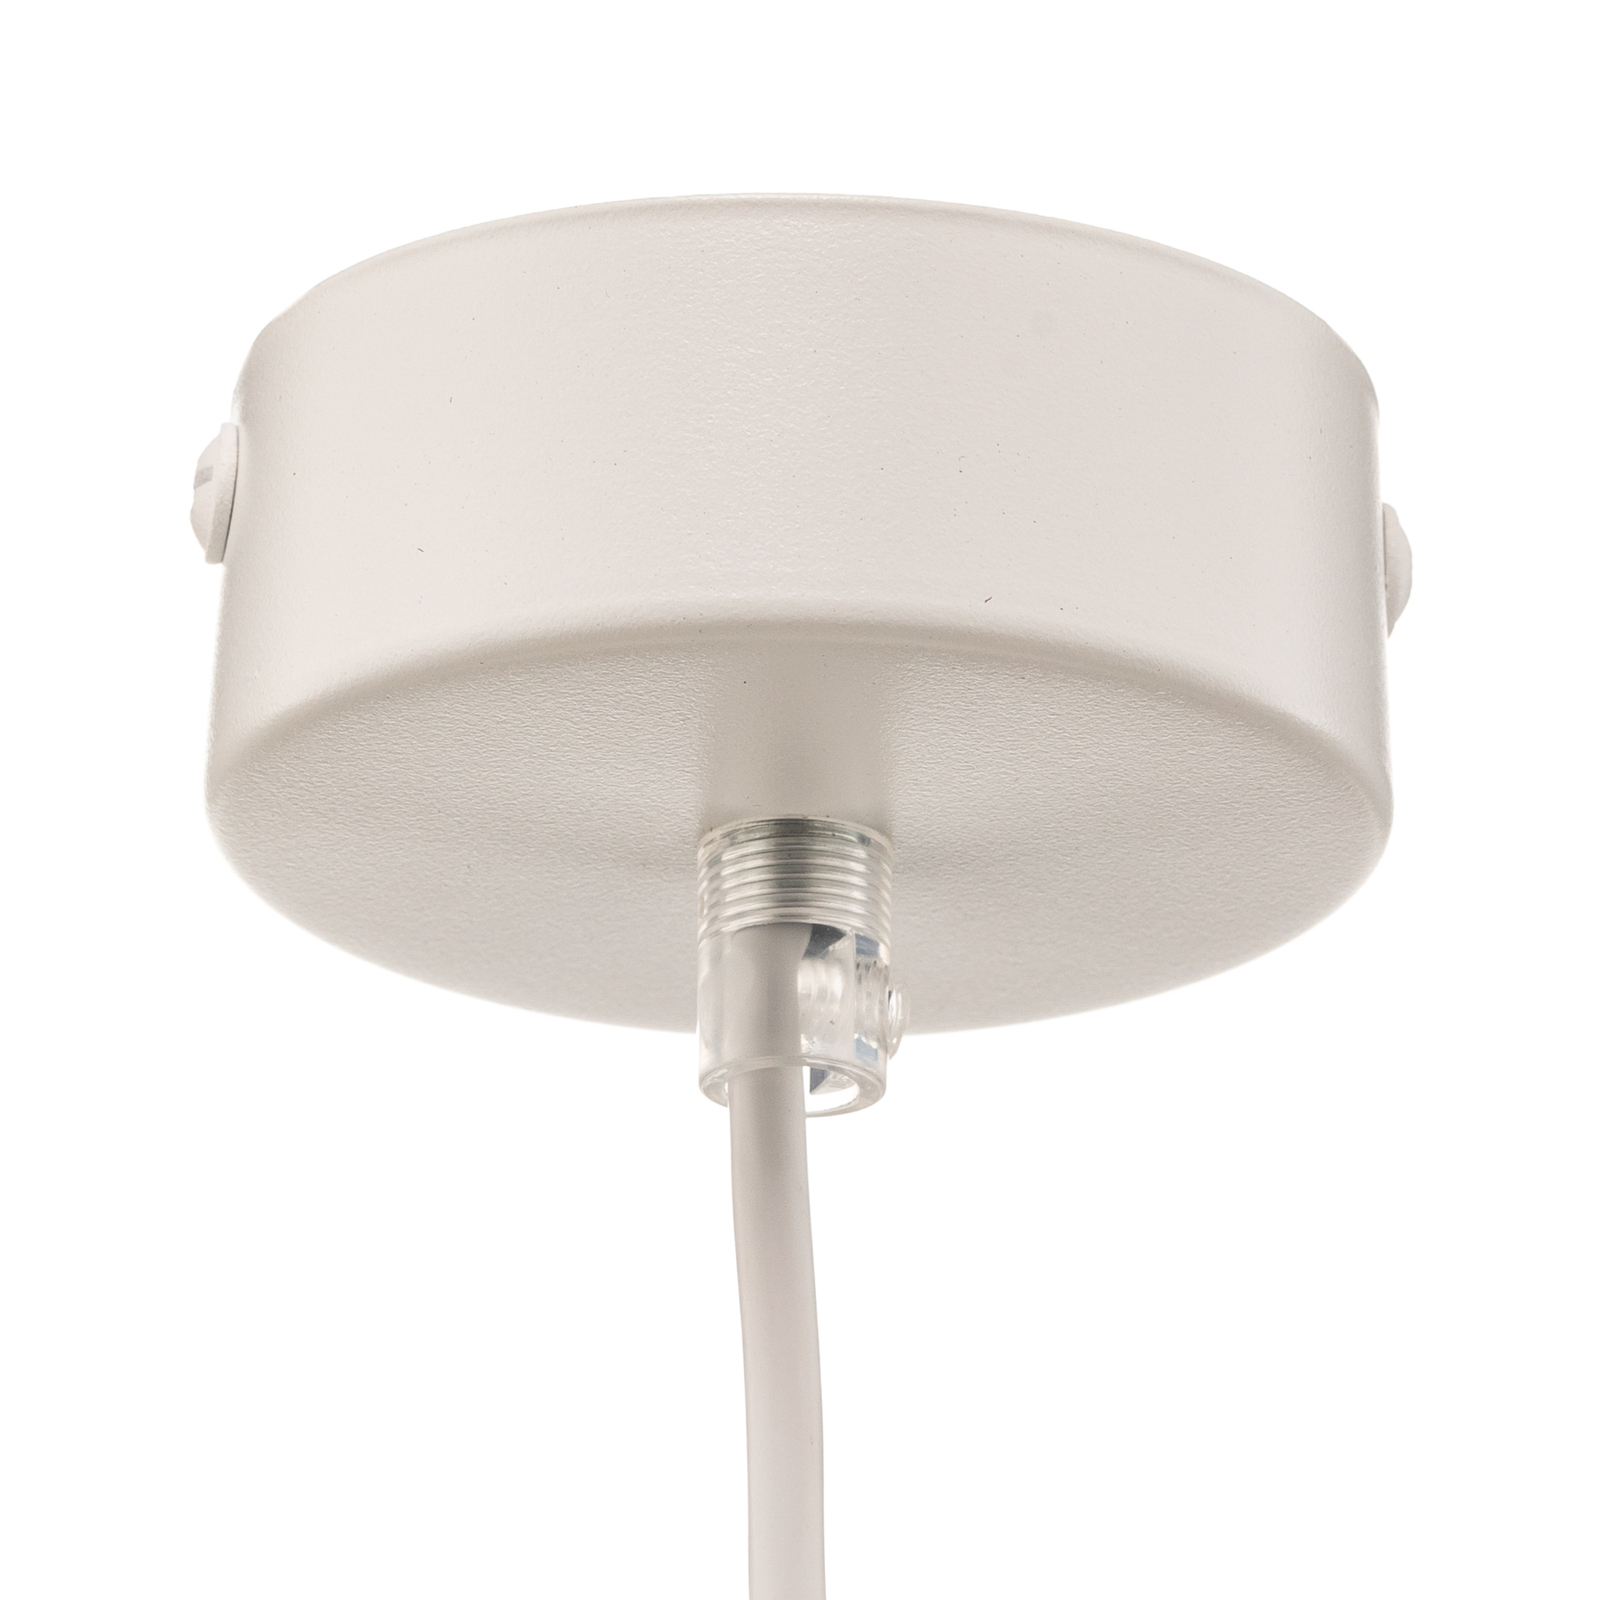 Hanglamp Tira, 1-lamp, wit